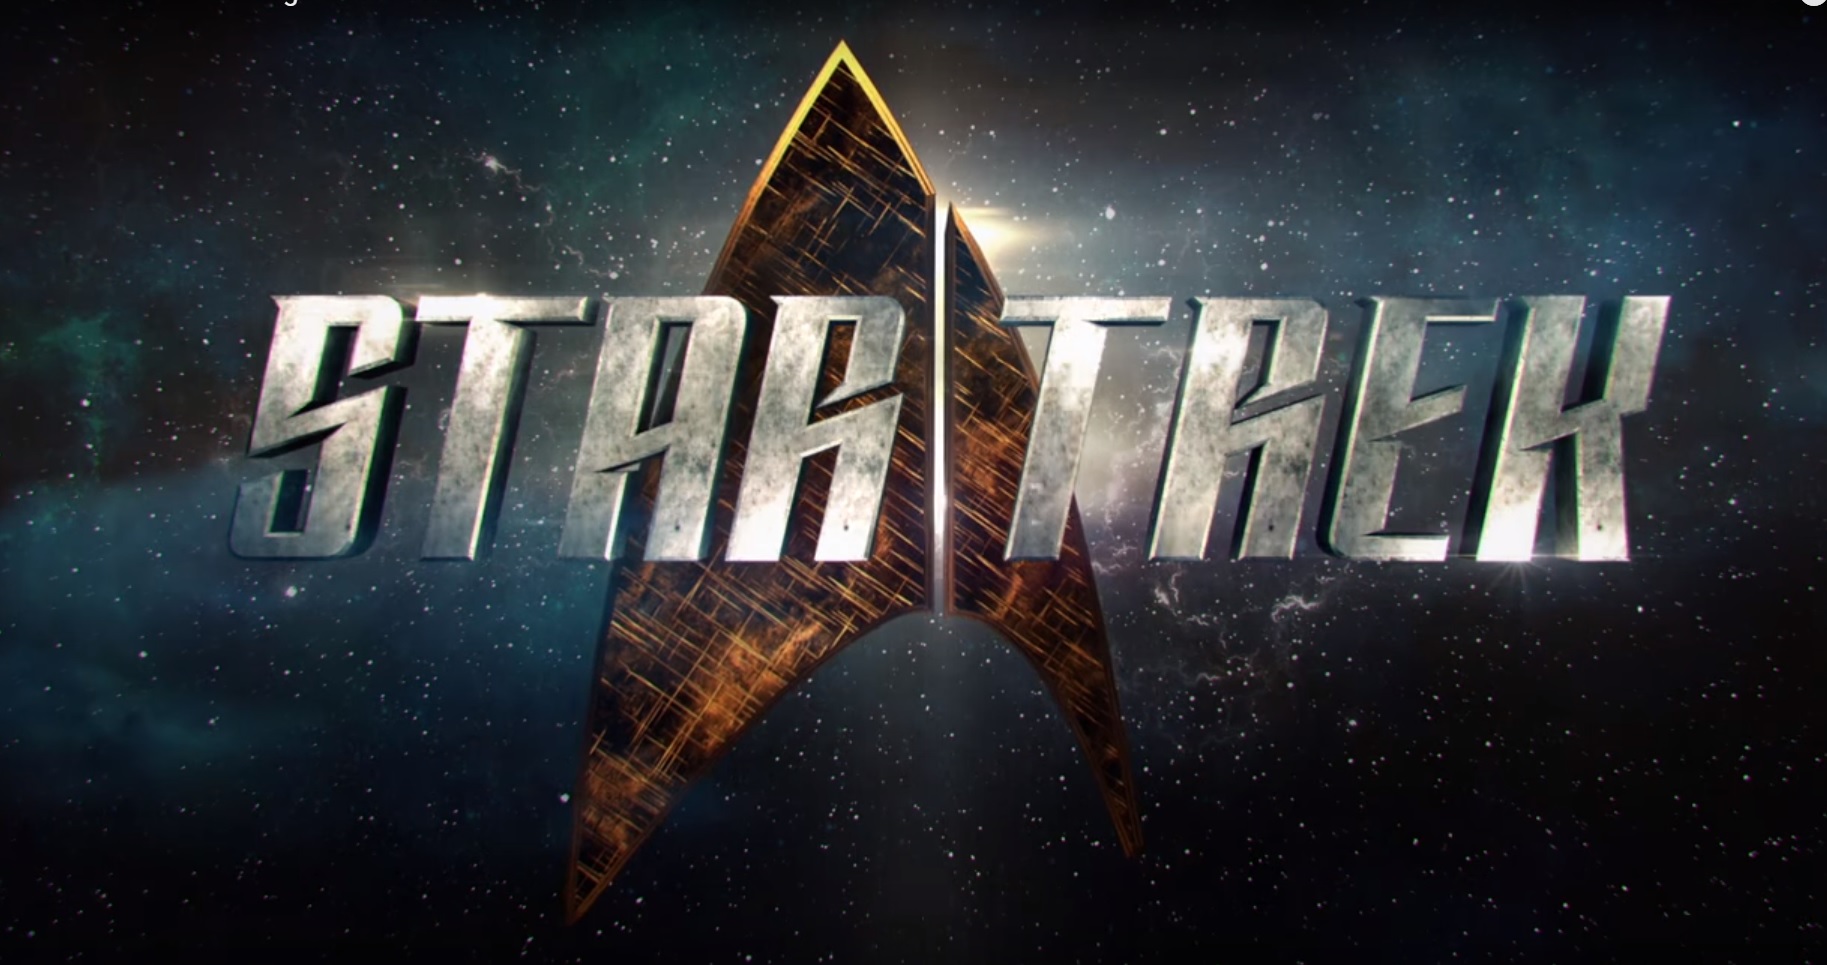 New Star Trek logo